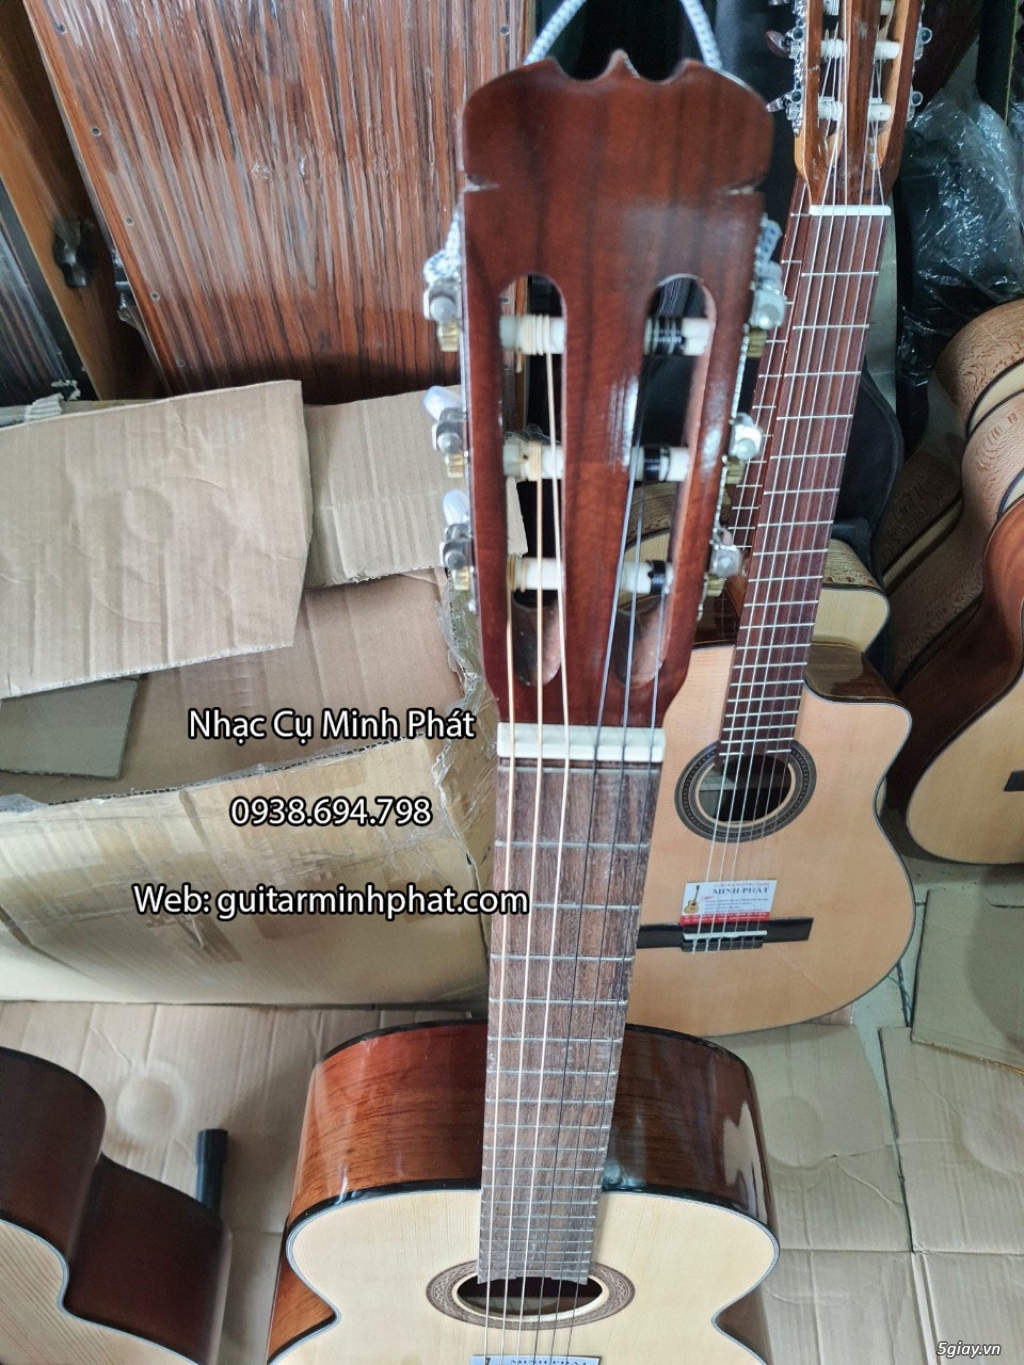 Bán đàn guitar, ukulele, kalimba giá rẻ ở quận Gò Vấp TPHCM - 21